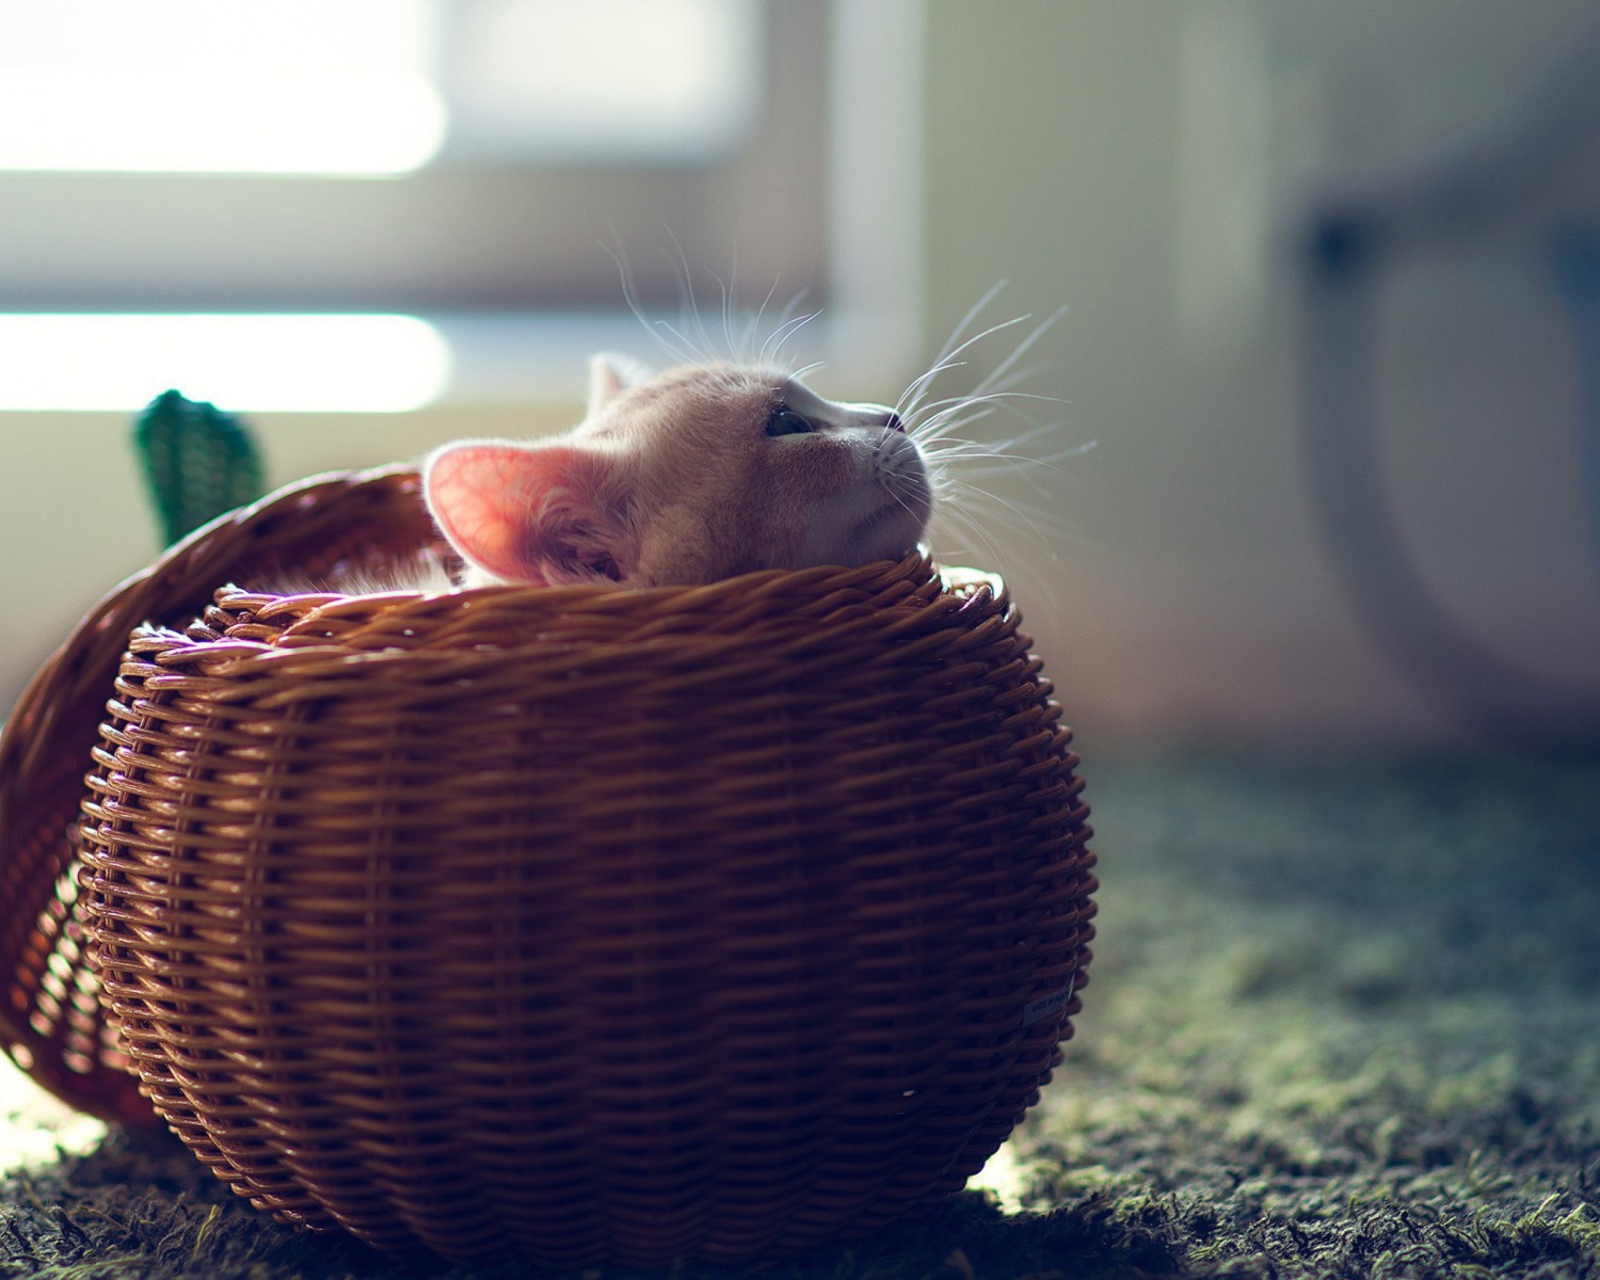 Cute Kitten In Basket wallpaper 1600x1280